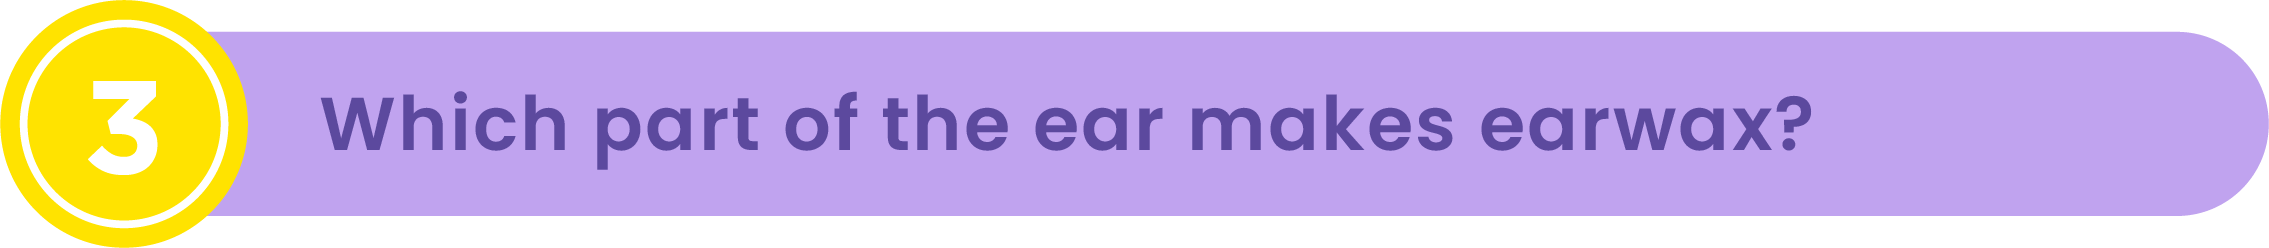 ear wax quiz